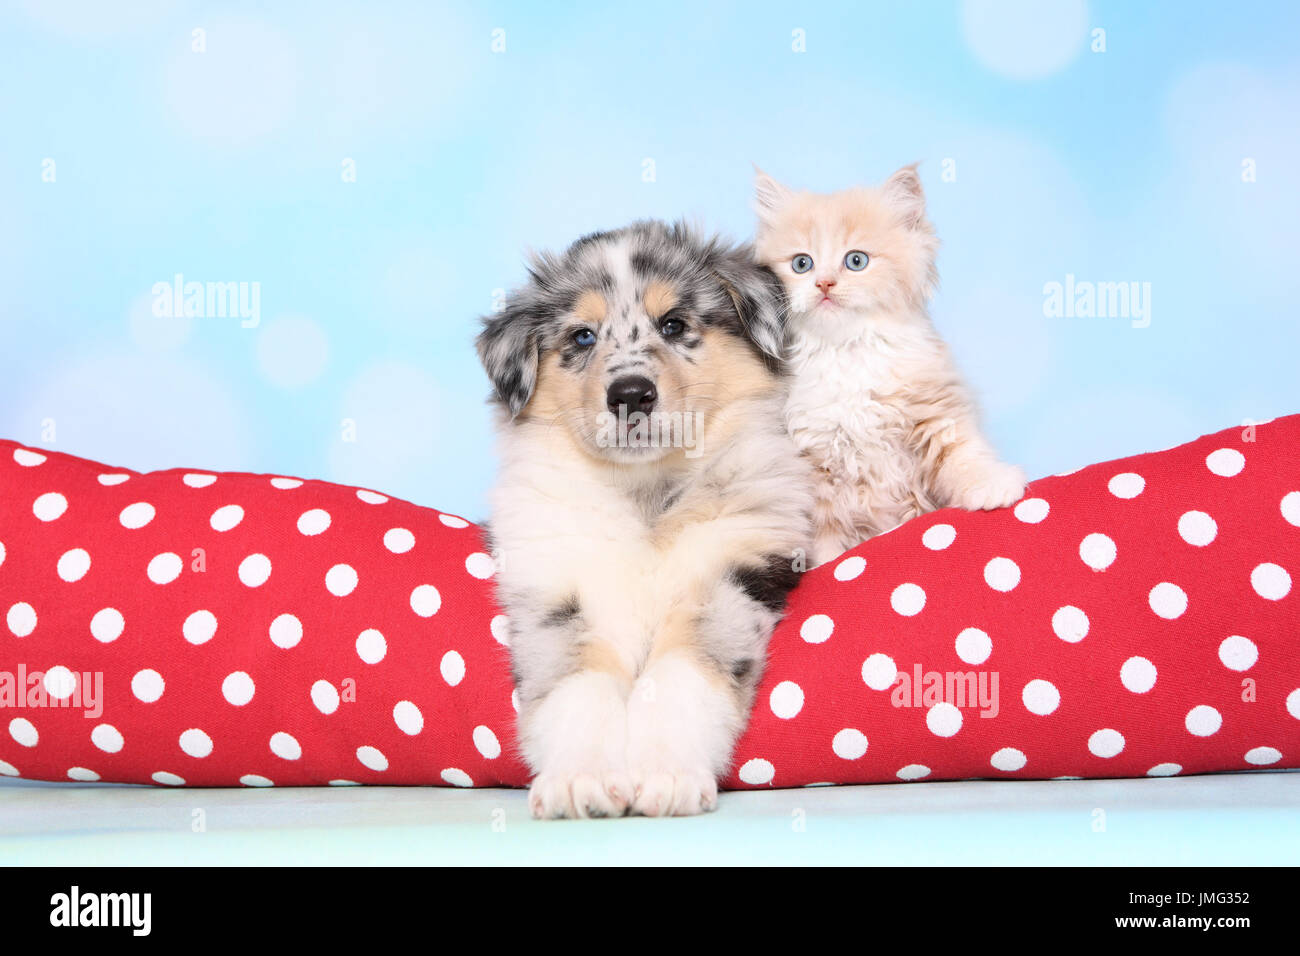 Amerikanischer Collie e Selkirk Rex. Cucciolo (6 settimane di età) e gattino sdraiato su un cuscino rosso con il bianco a pois. Studio Immagine contro un fondo azzurro. Germania Foto Stock